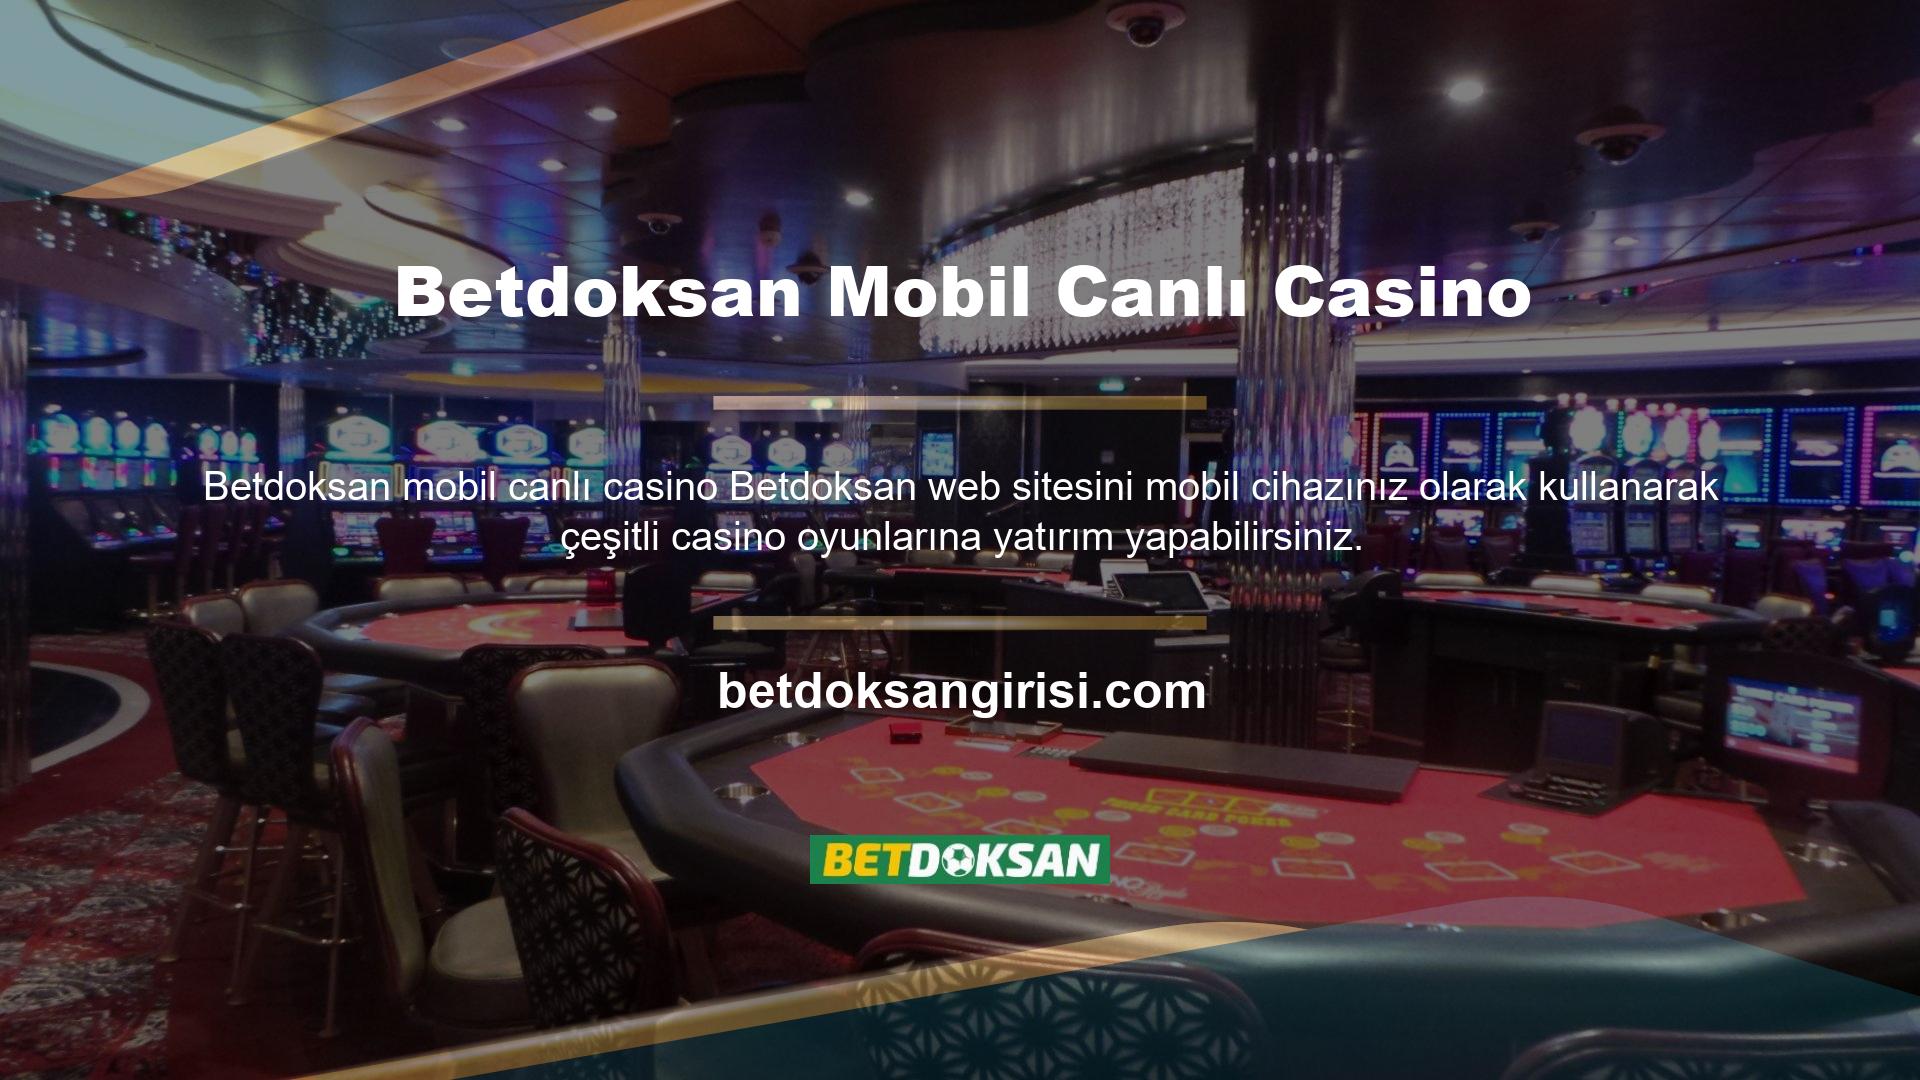 Mobil cihazlarda Betdoksan canlı casino oyunları çok uygundur ve en yüksek kalitede çalışır